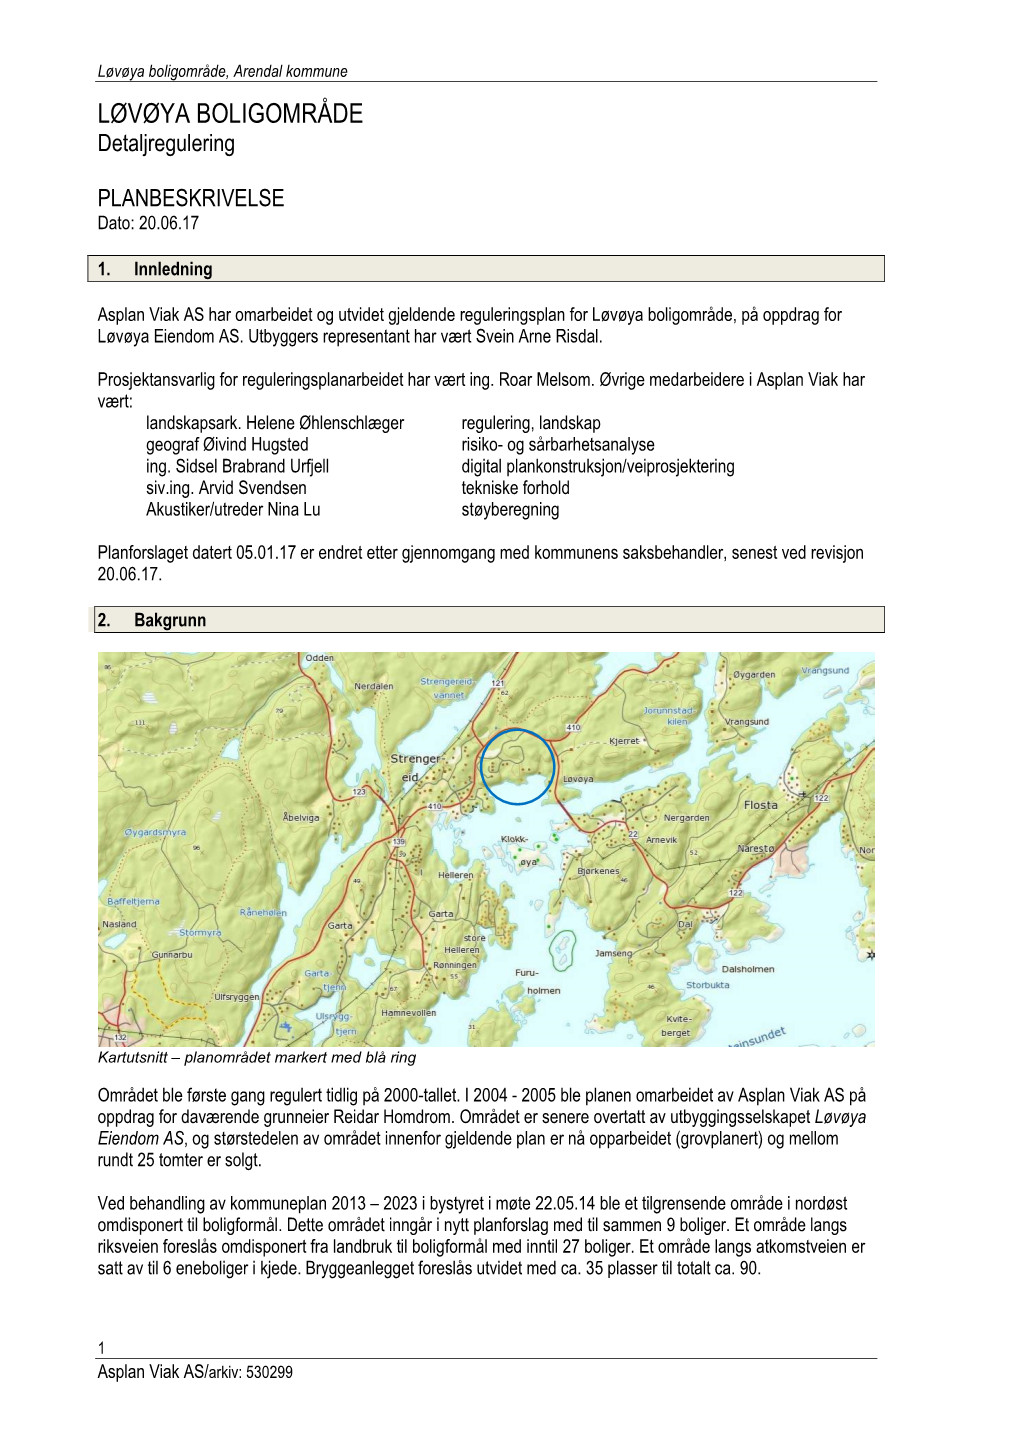 Reguleringsplan for Løvøya Boligområde, På Oppdrag for Løvøya Eiendom AS